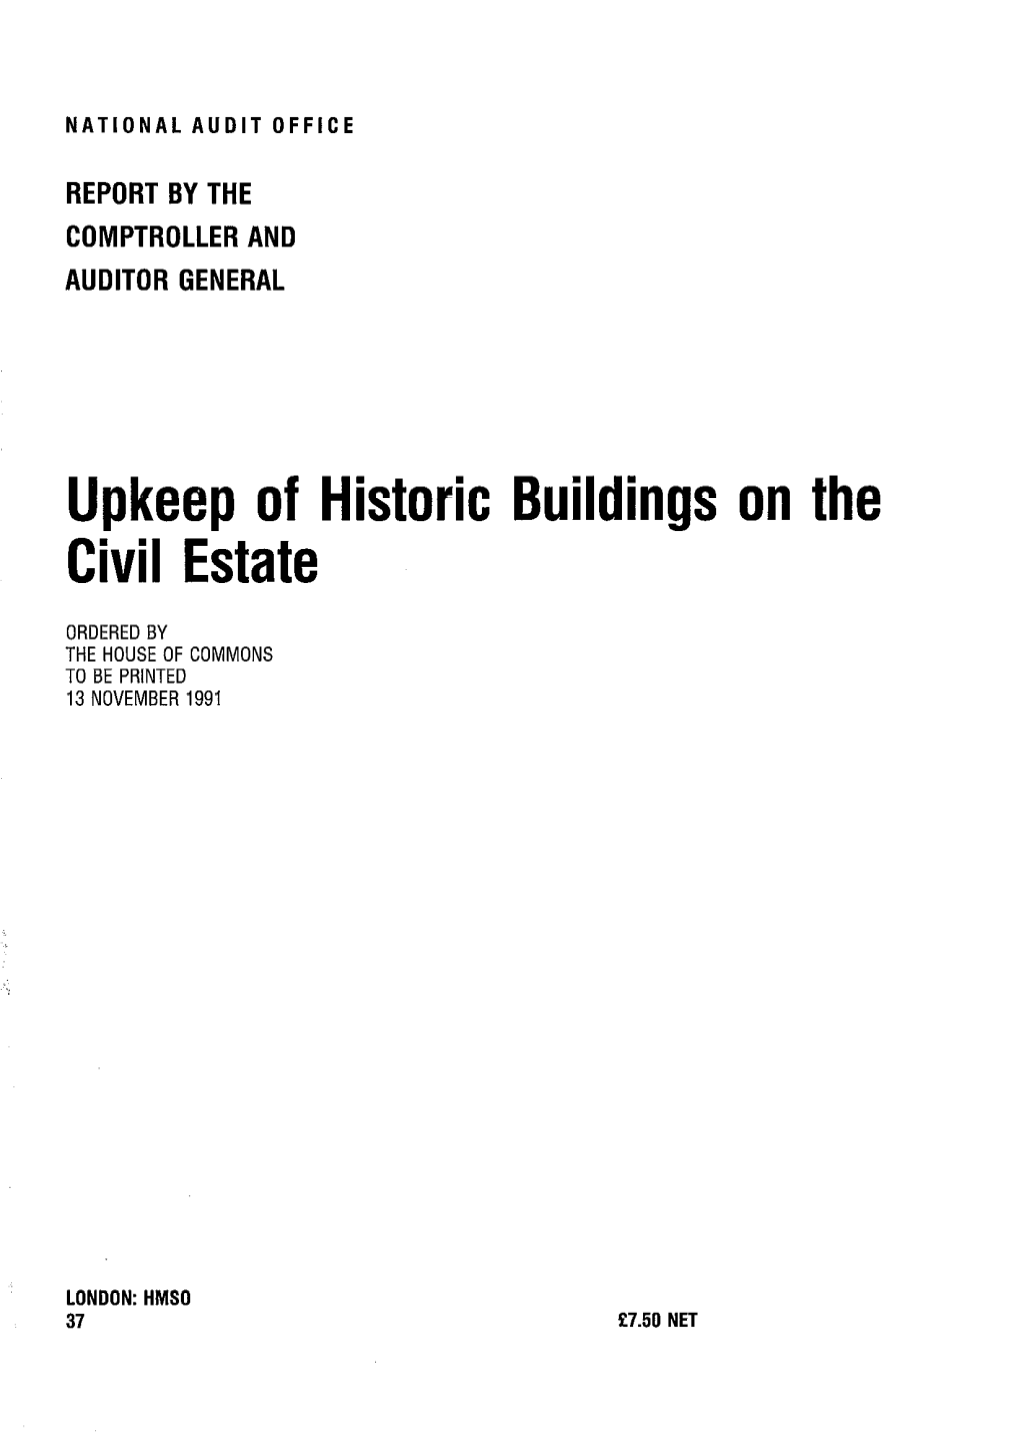 Upkeep of Historic Buildings on the Civil Estate